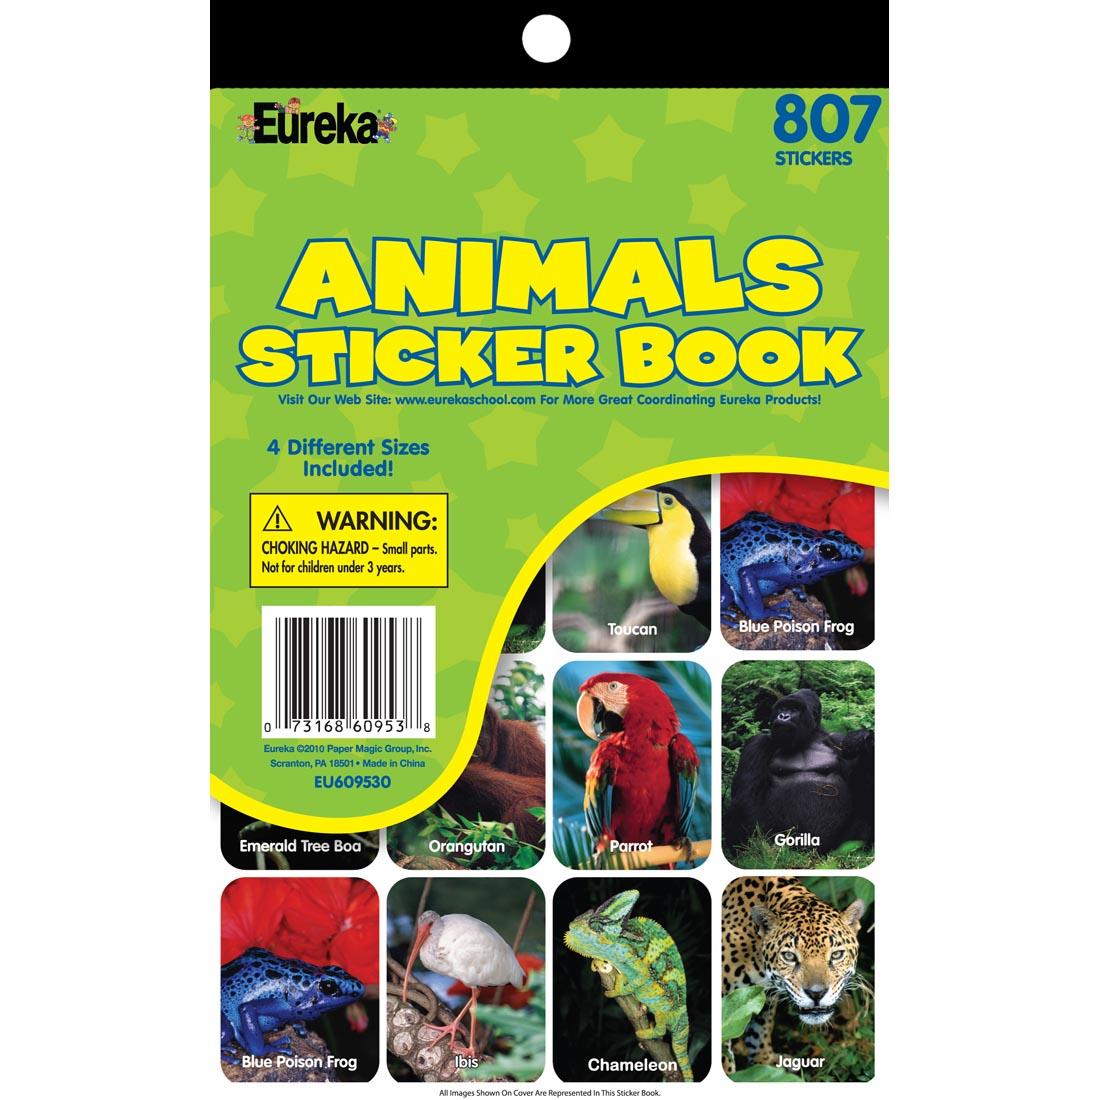 Animals Sticker Book by Eureka